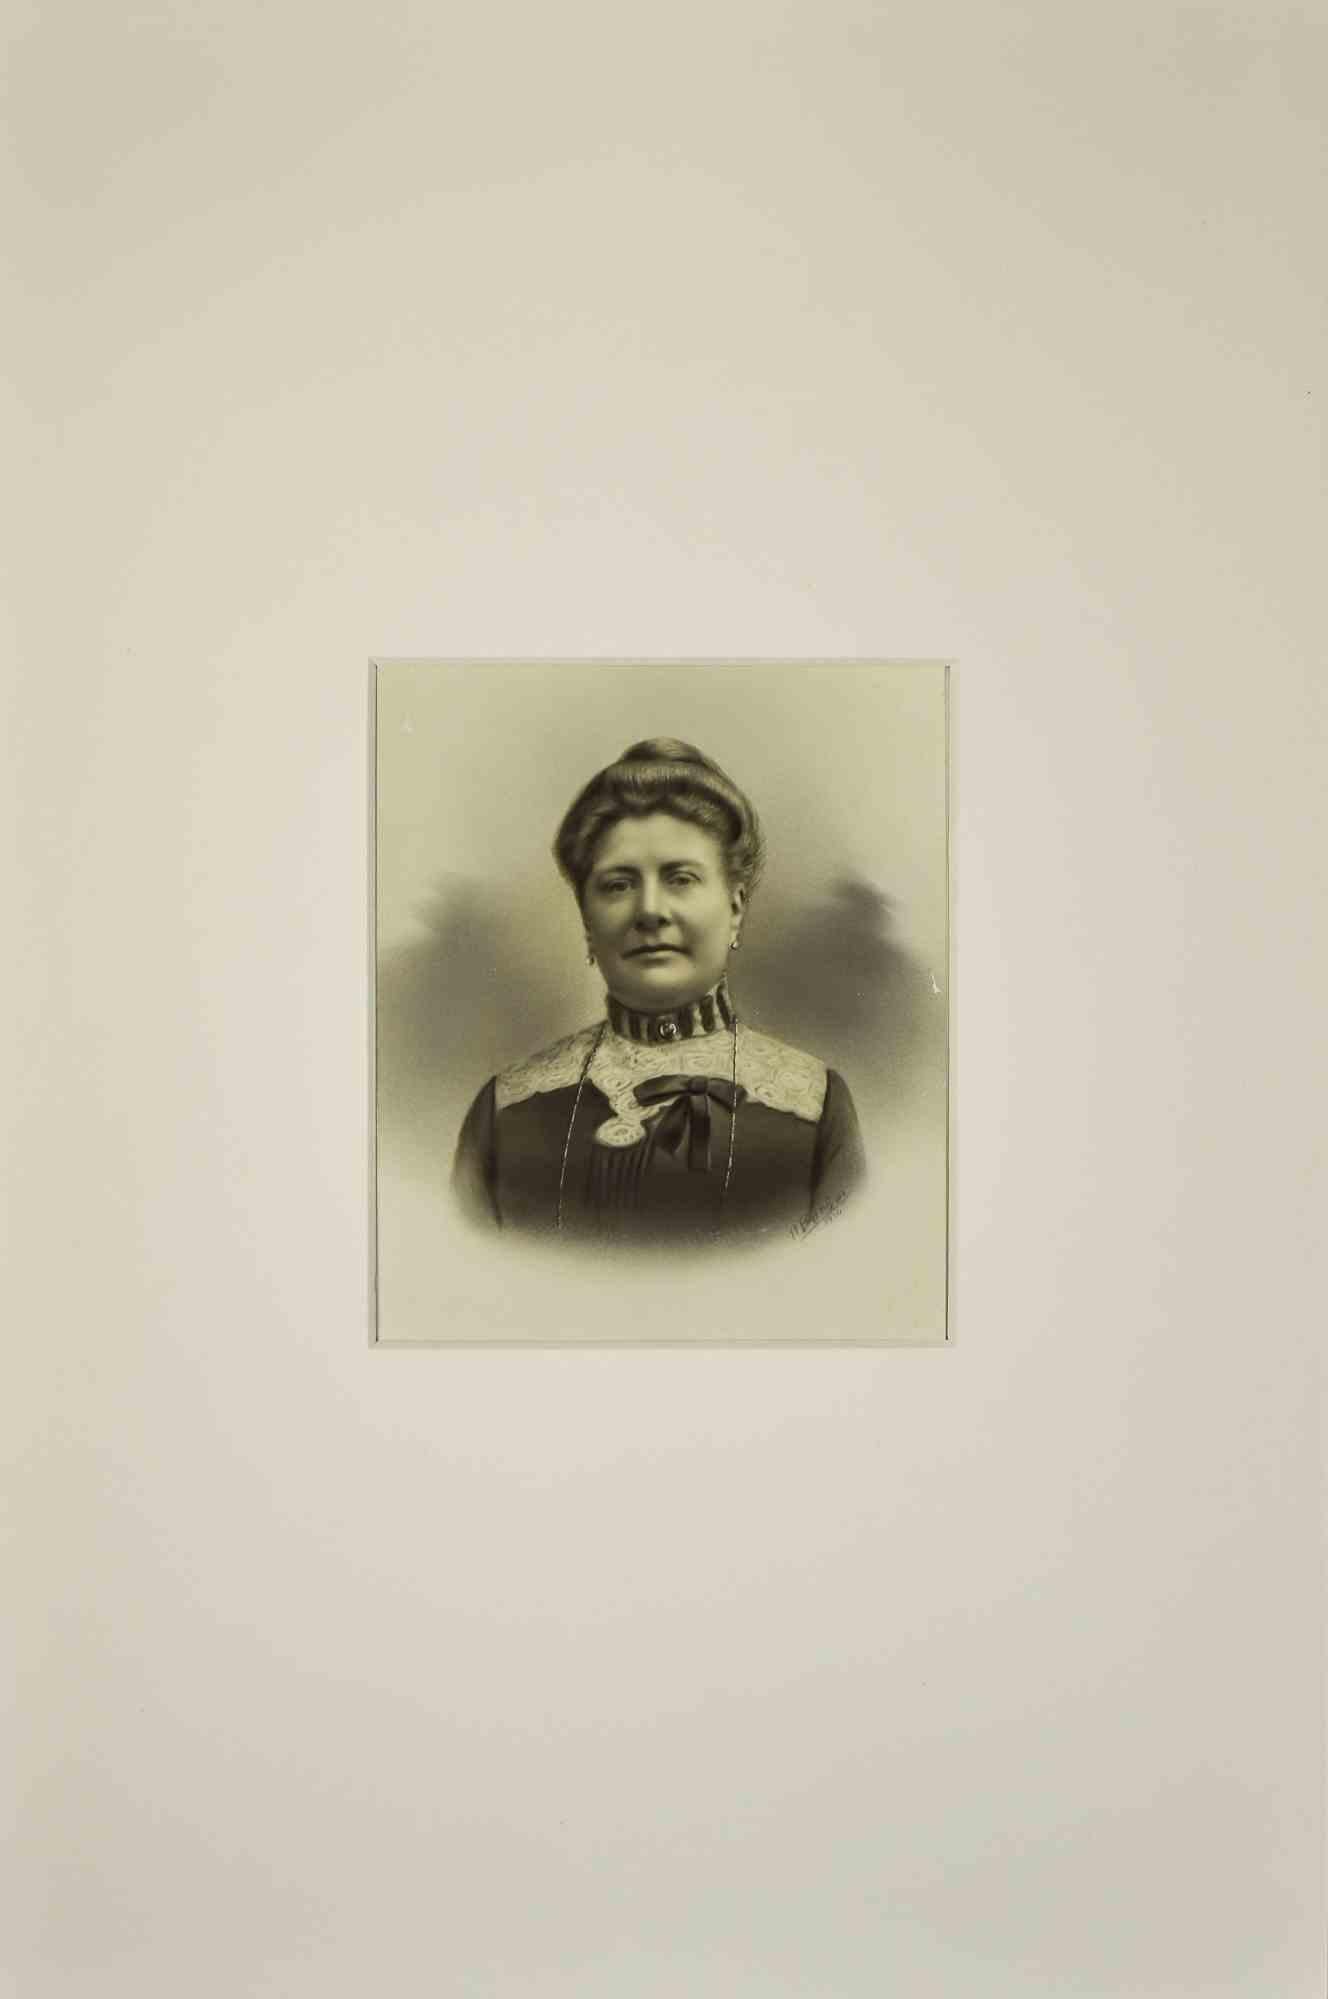 Unknown Portrait Photograph - Noble Woman - Silver Salt Photograph - 1890s